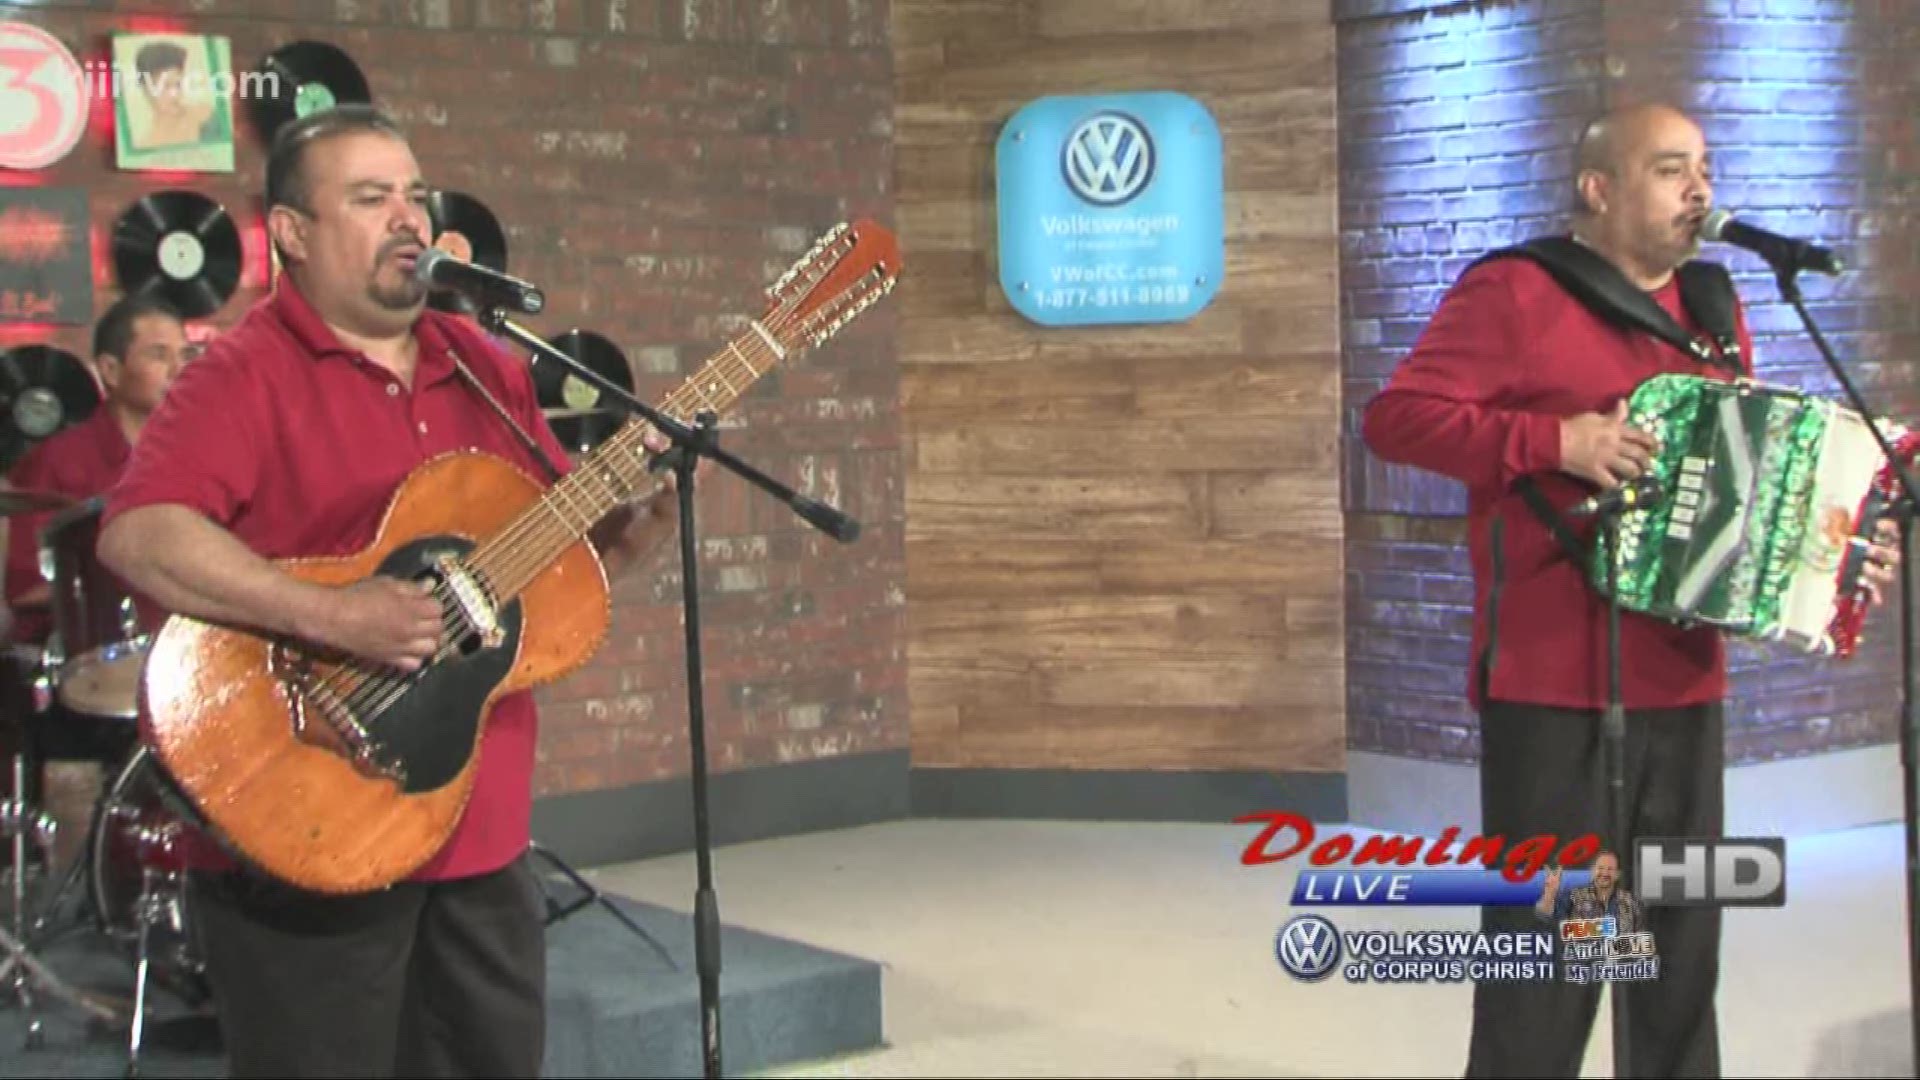 Los Hermanos De Leon performing "Por Amor Al Dinero" on Domingo Live.